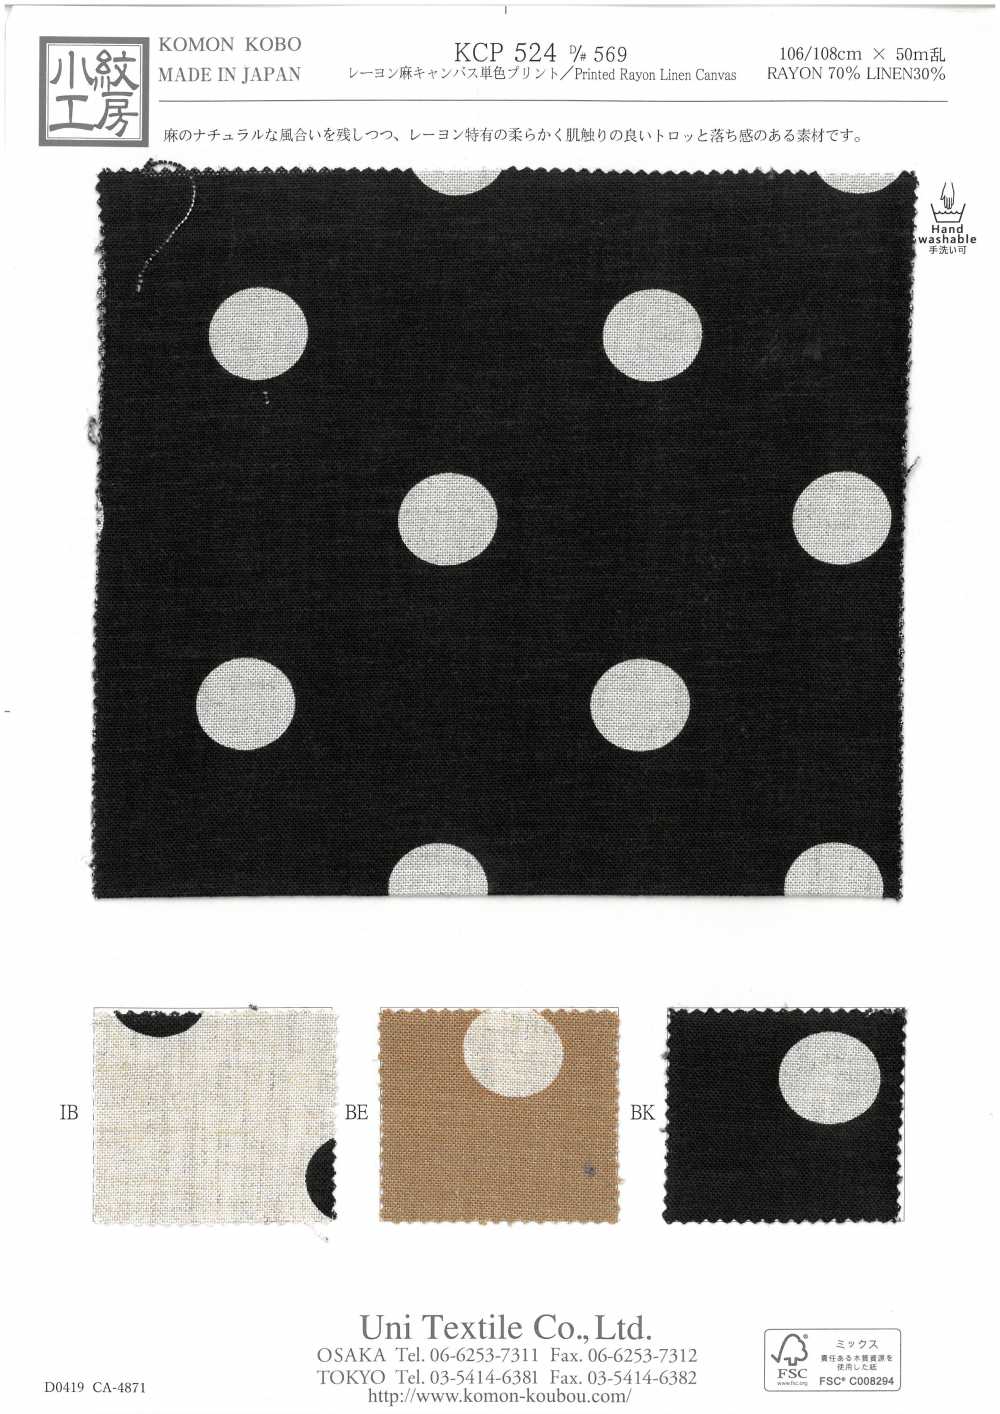 KCP524 D-569 Stampa In Tela Di Lino Rayon A Un Colore[Tessile / Tessuto] Uni Textile